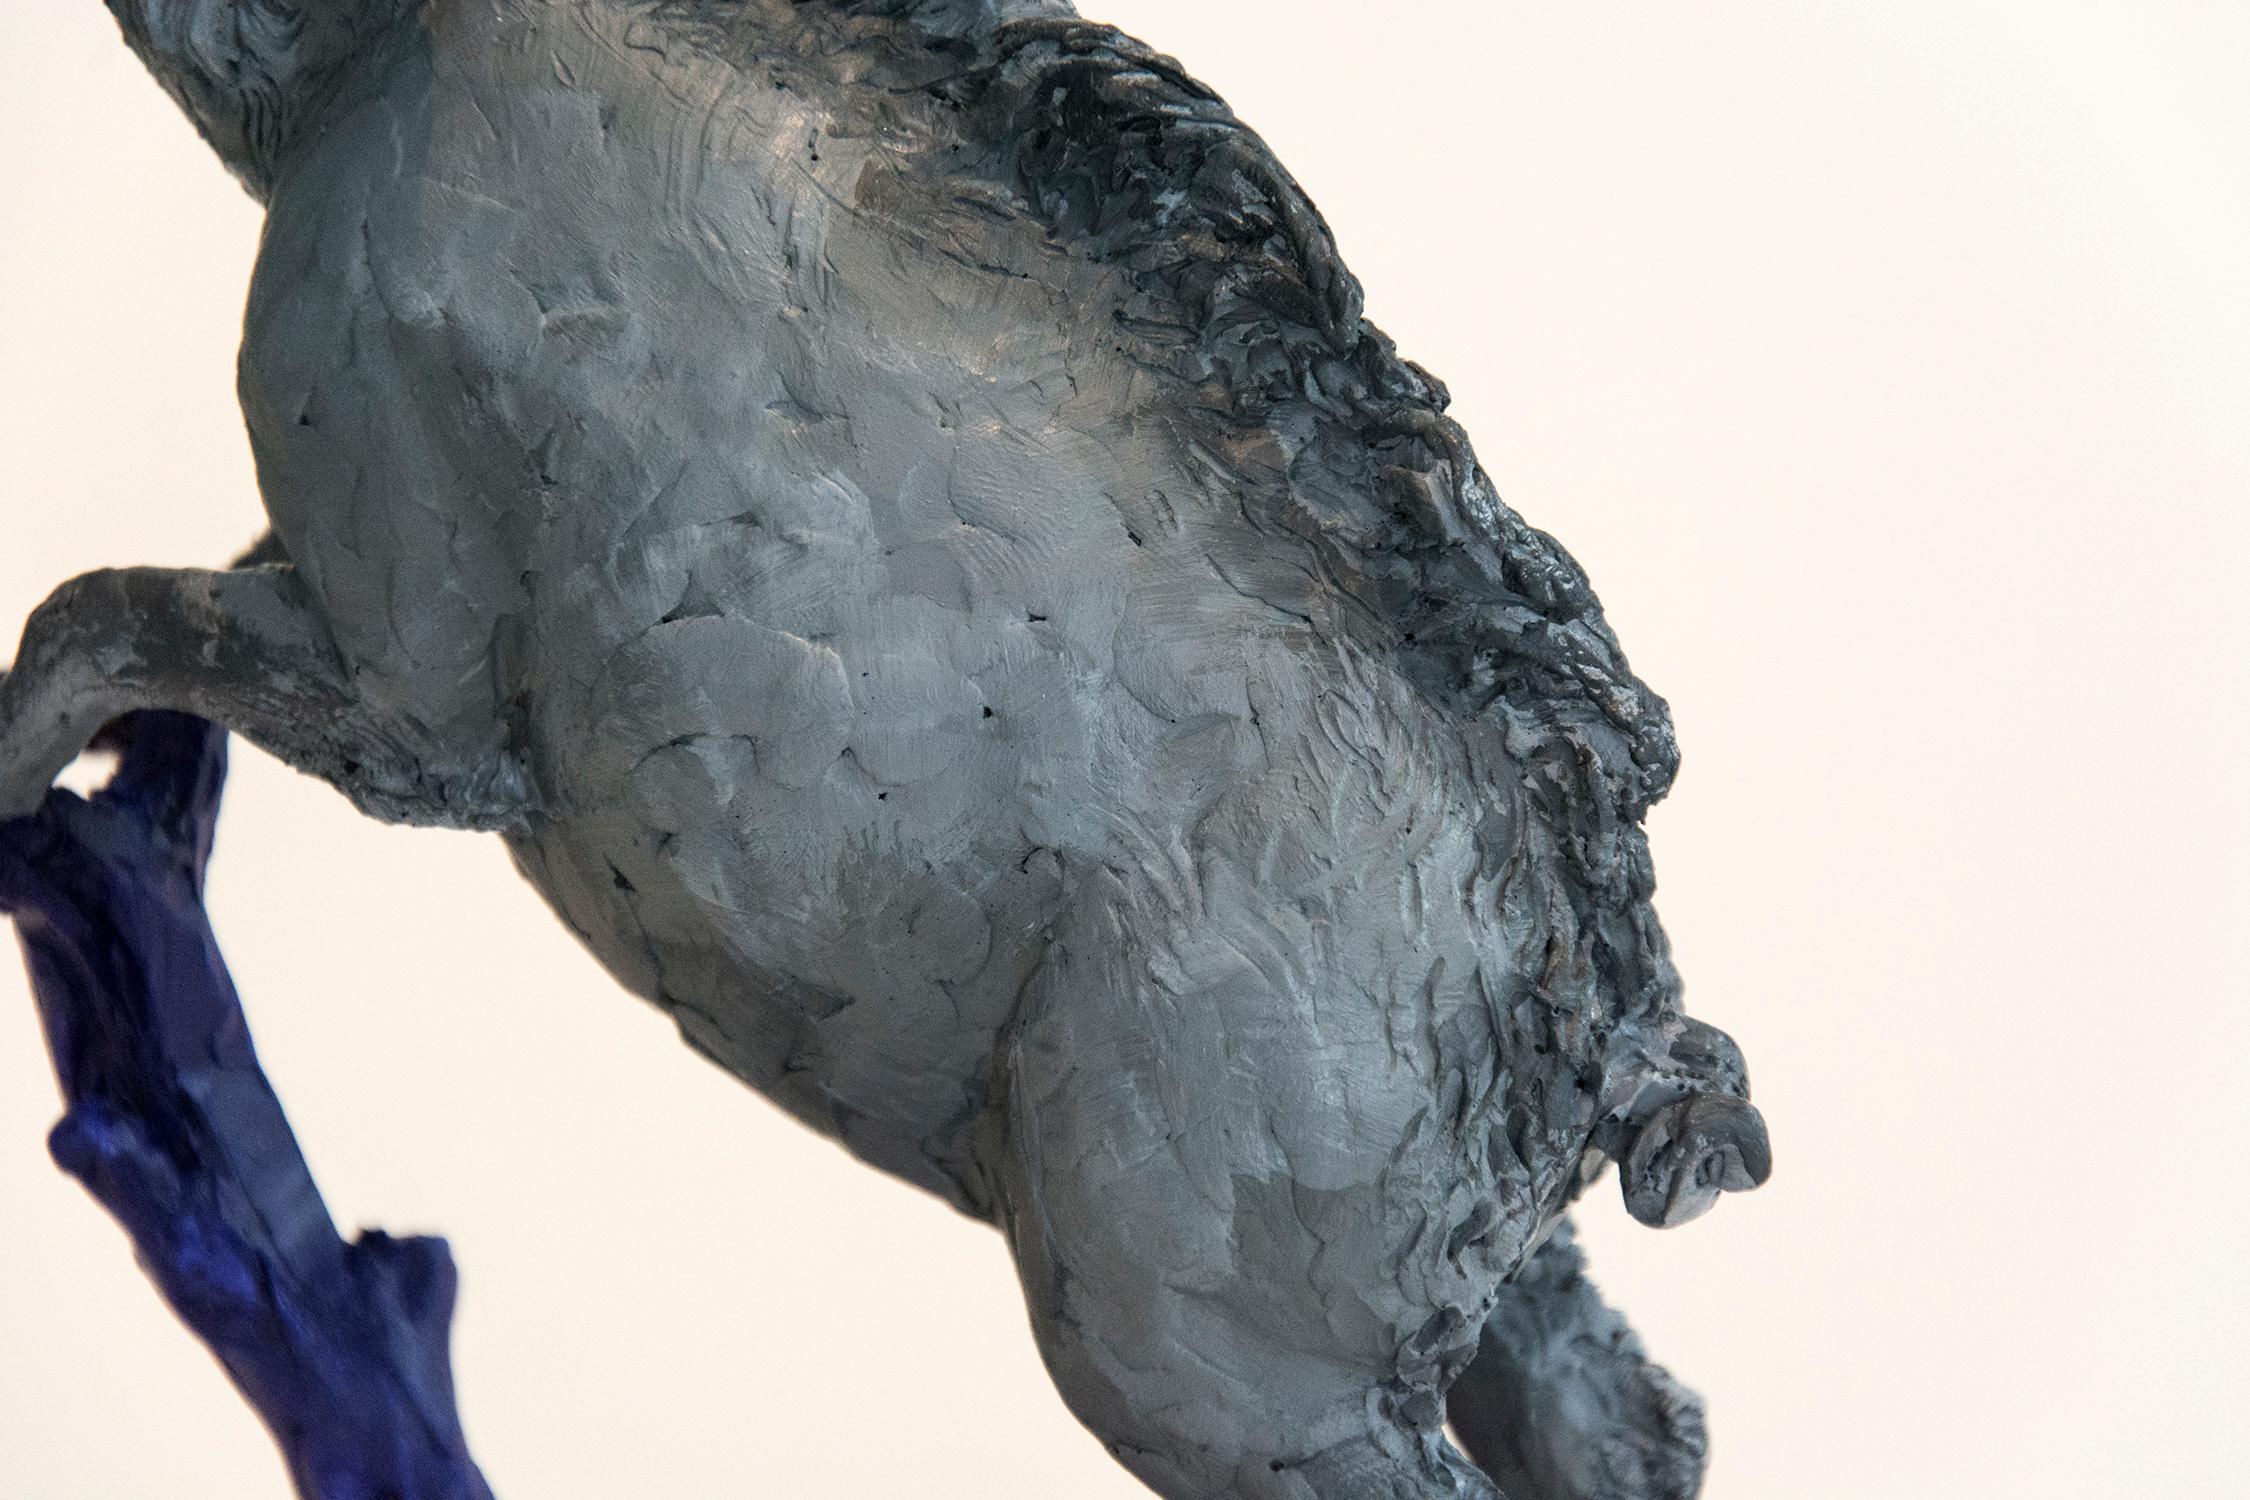 Boar 2/8 - klein, grau, blau, figurativ, Tier, Harzguss, Tischskulptur (Zeitgenössisch), Sculpture, von Nicholas Crombach